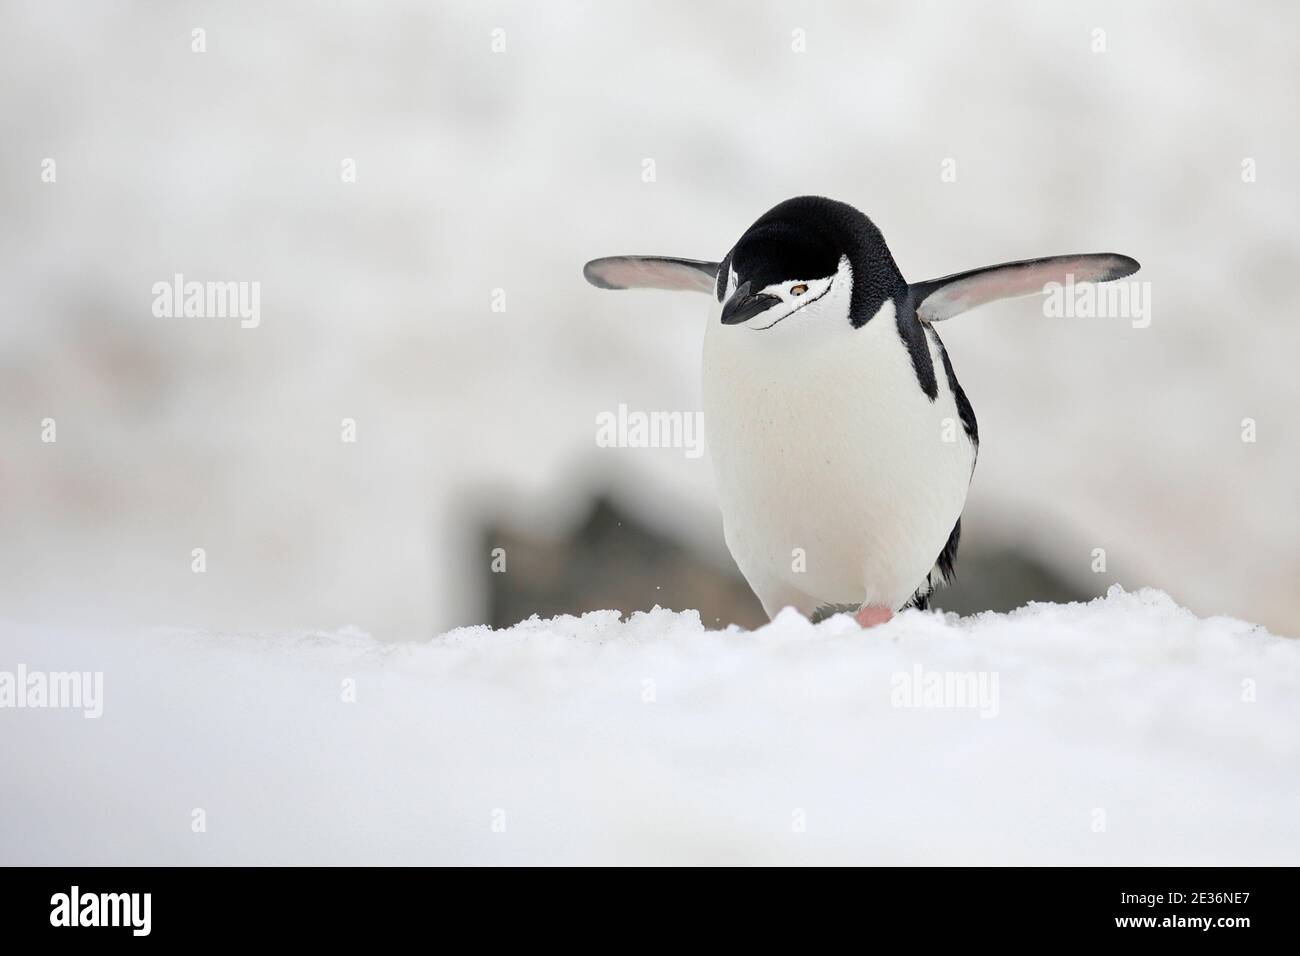 Pingouin de collier (Pygoscelis antarcticus), sur l'île de la demi-lune, près de la péninsule antarctique 14 décembre 2015 Banque D'Images